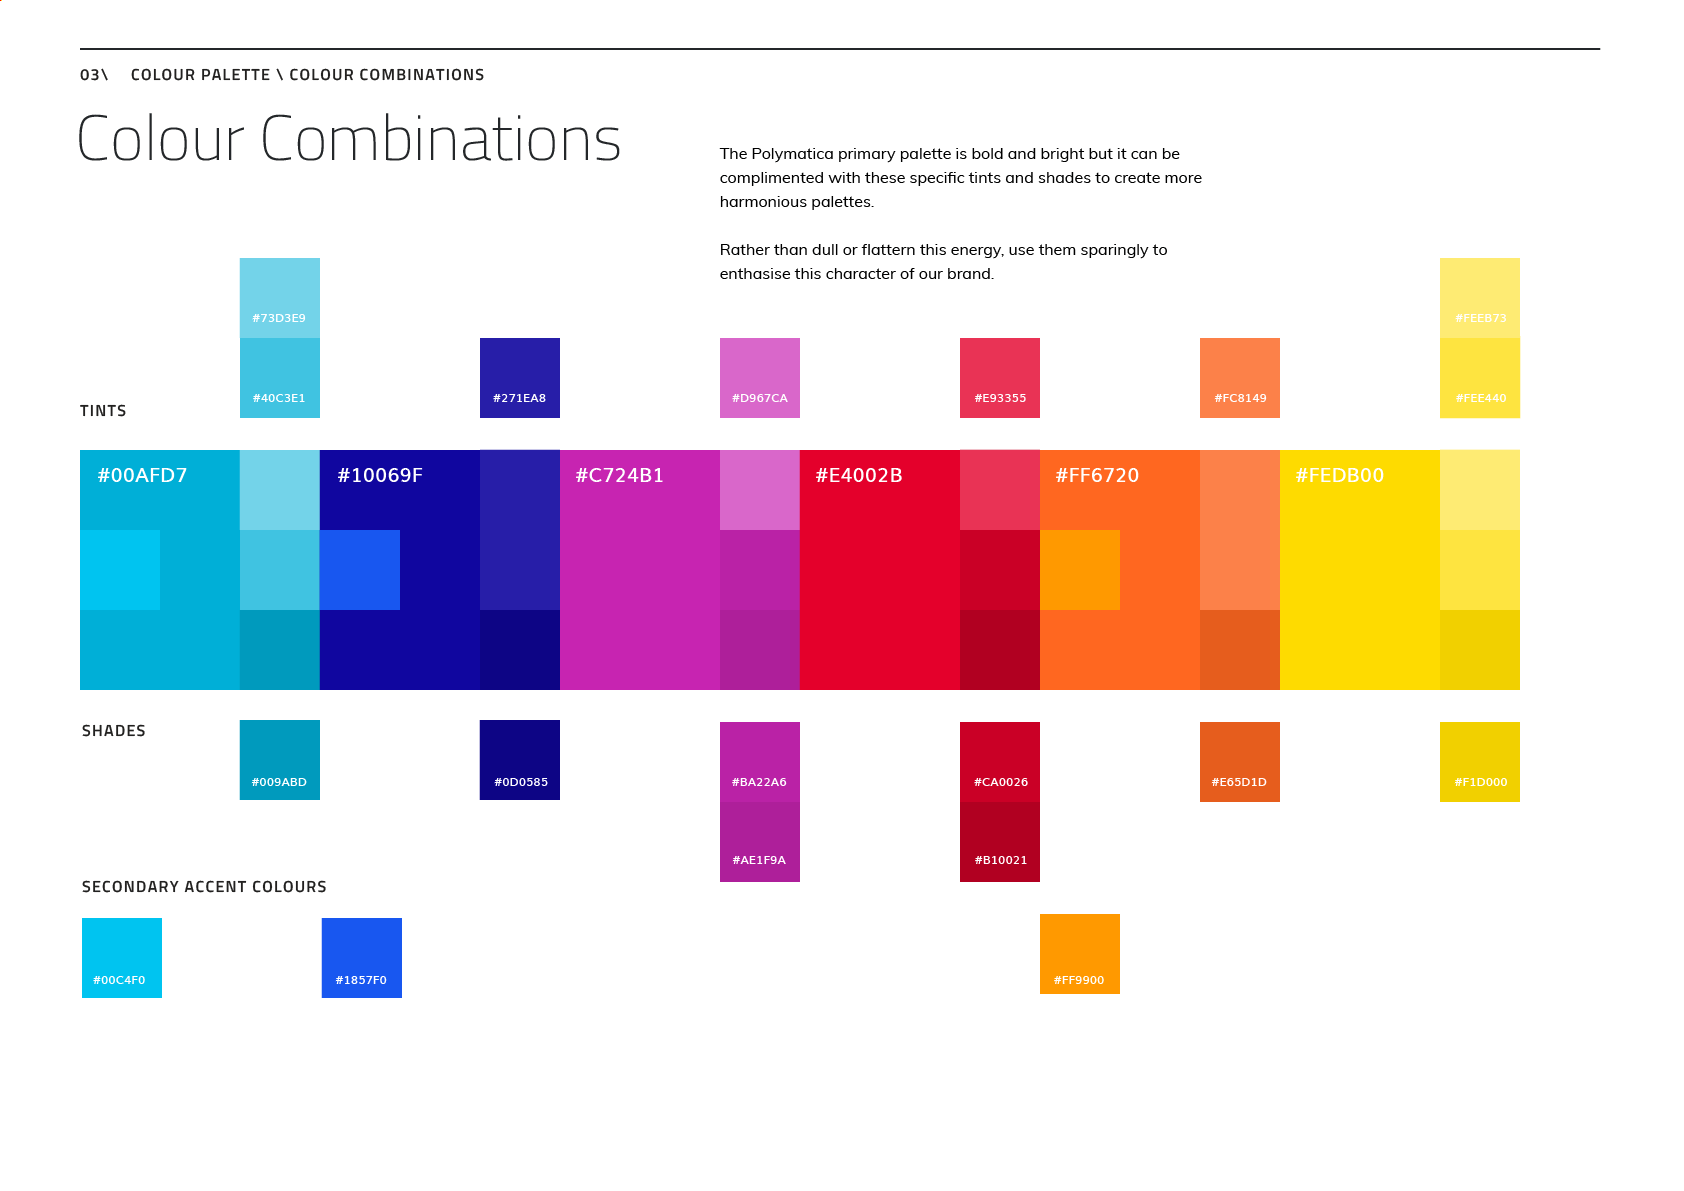 Colour Combinations